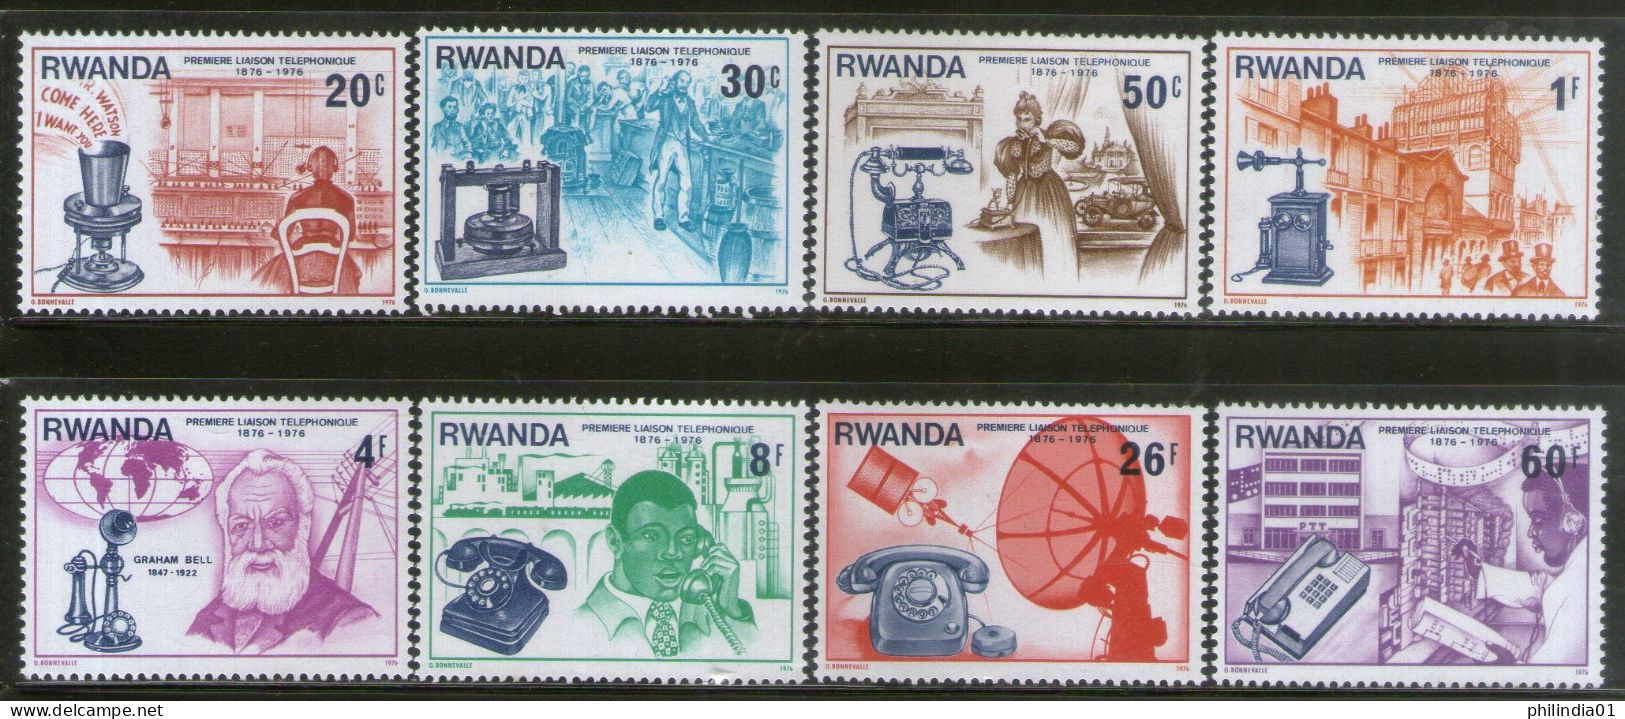 Rwanda 1981 Telephone Centenary Sc 746-53 MNH # 2289 - Telecom